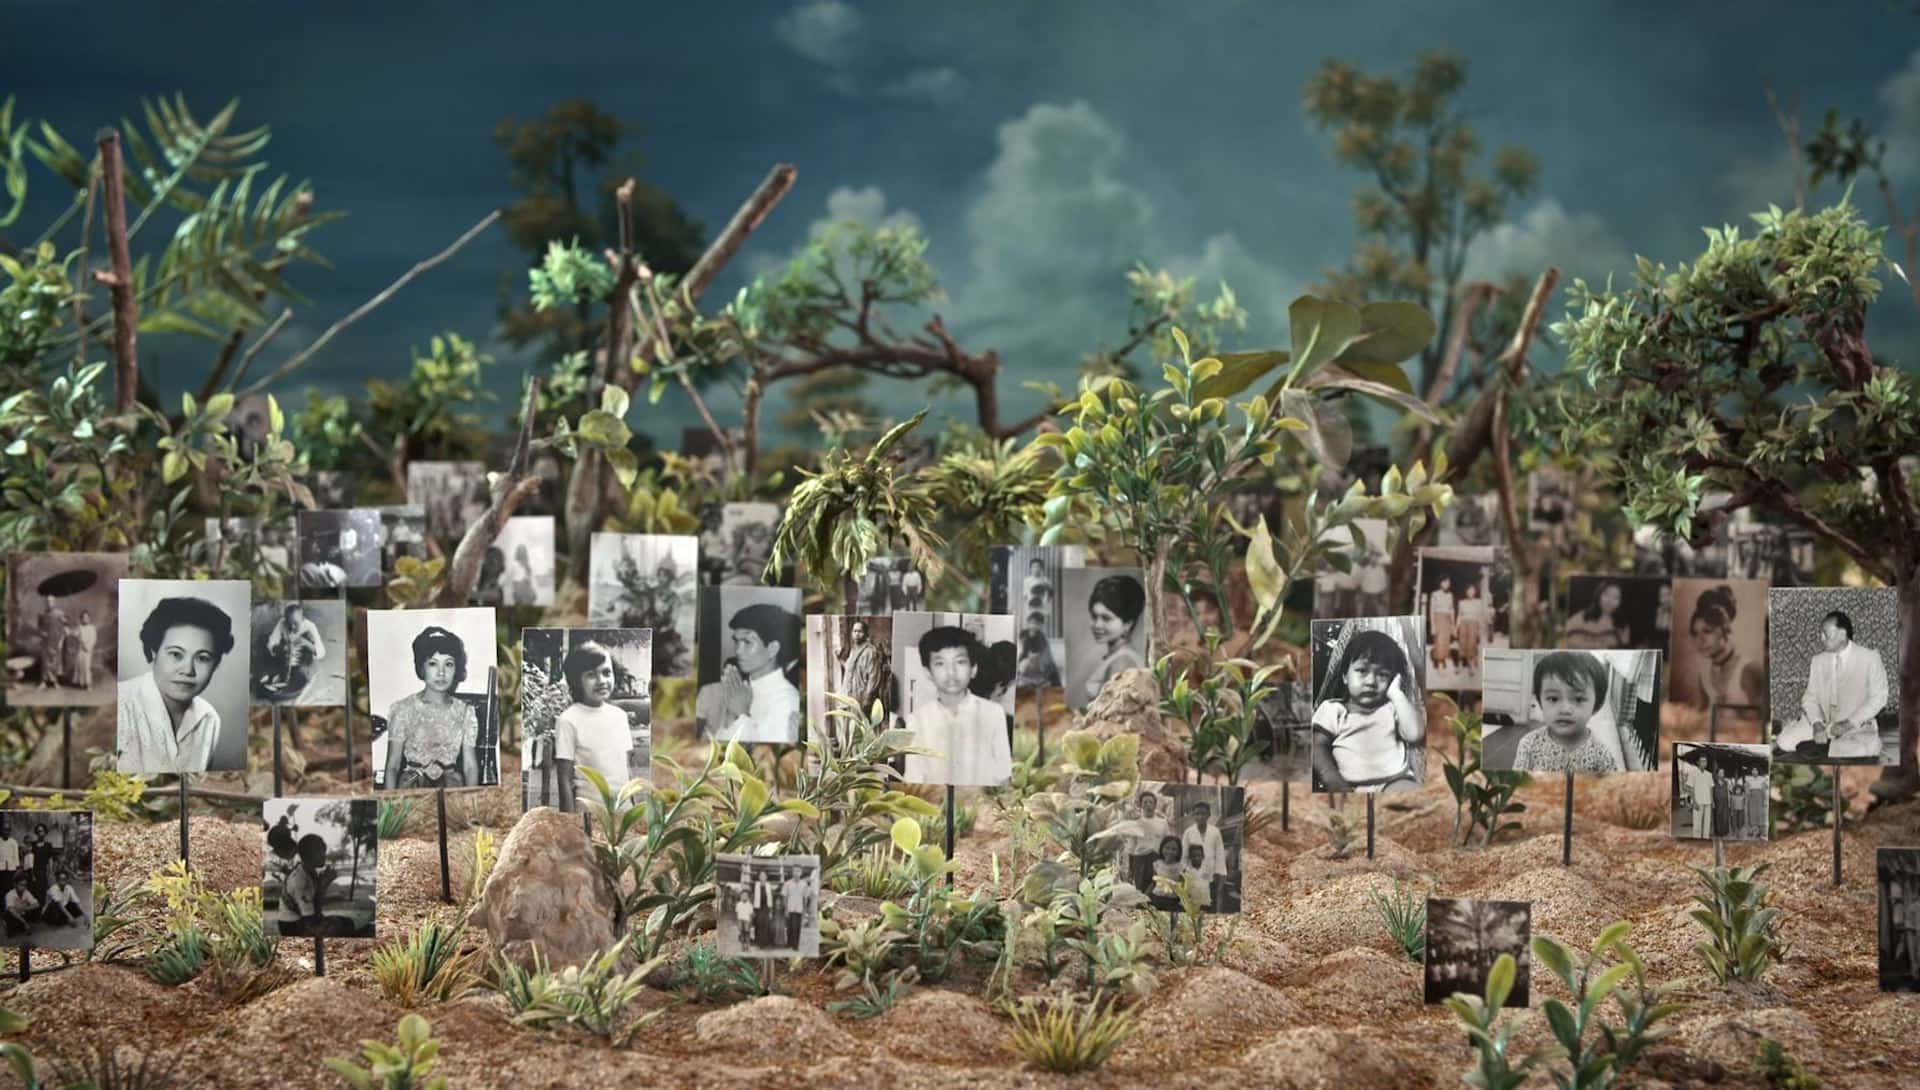 Les tombeaux sans noms, documentaire de Rithy Panh (2018)